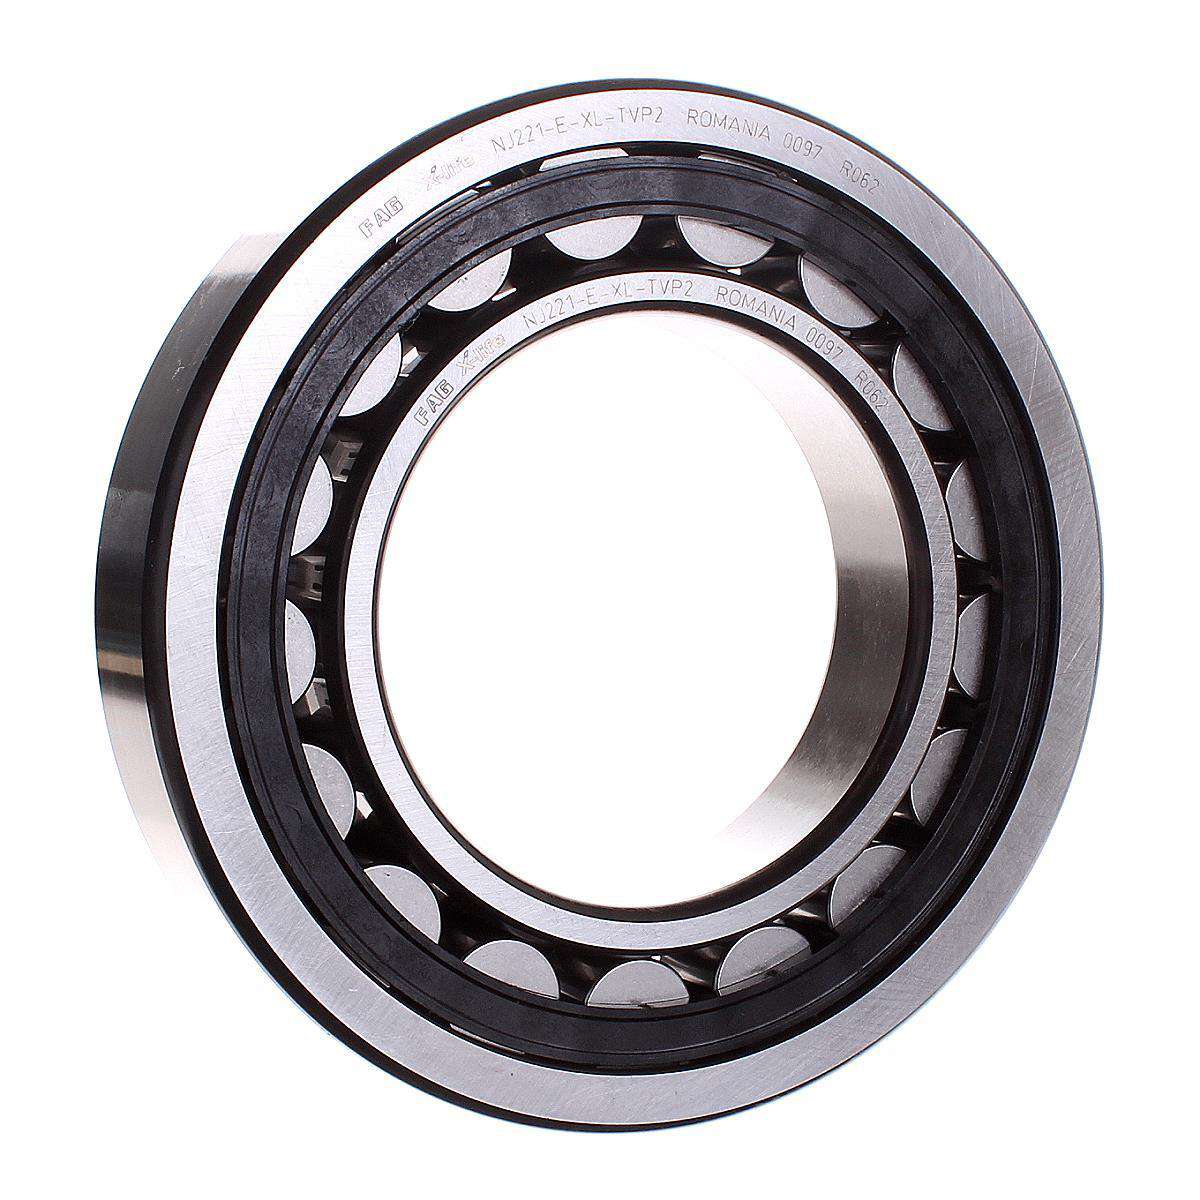 NU326-E-TVP2-C3 FAG Cylindrical roller bearing 130x280x58 FAG